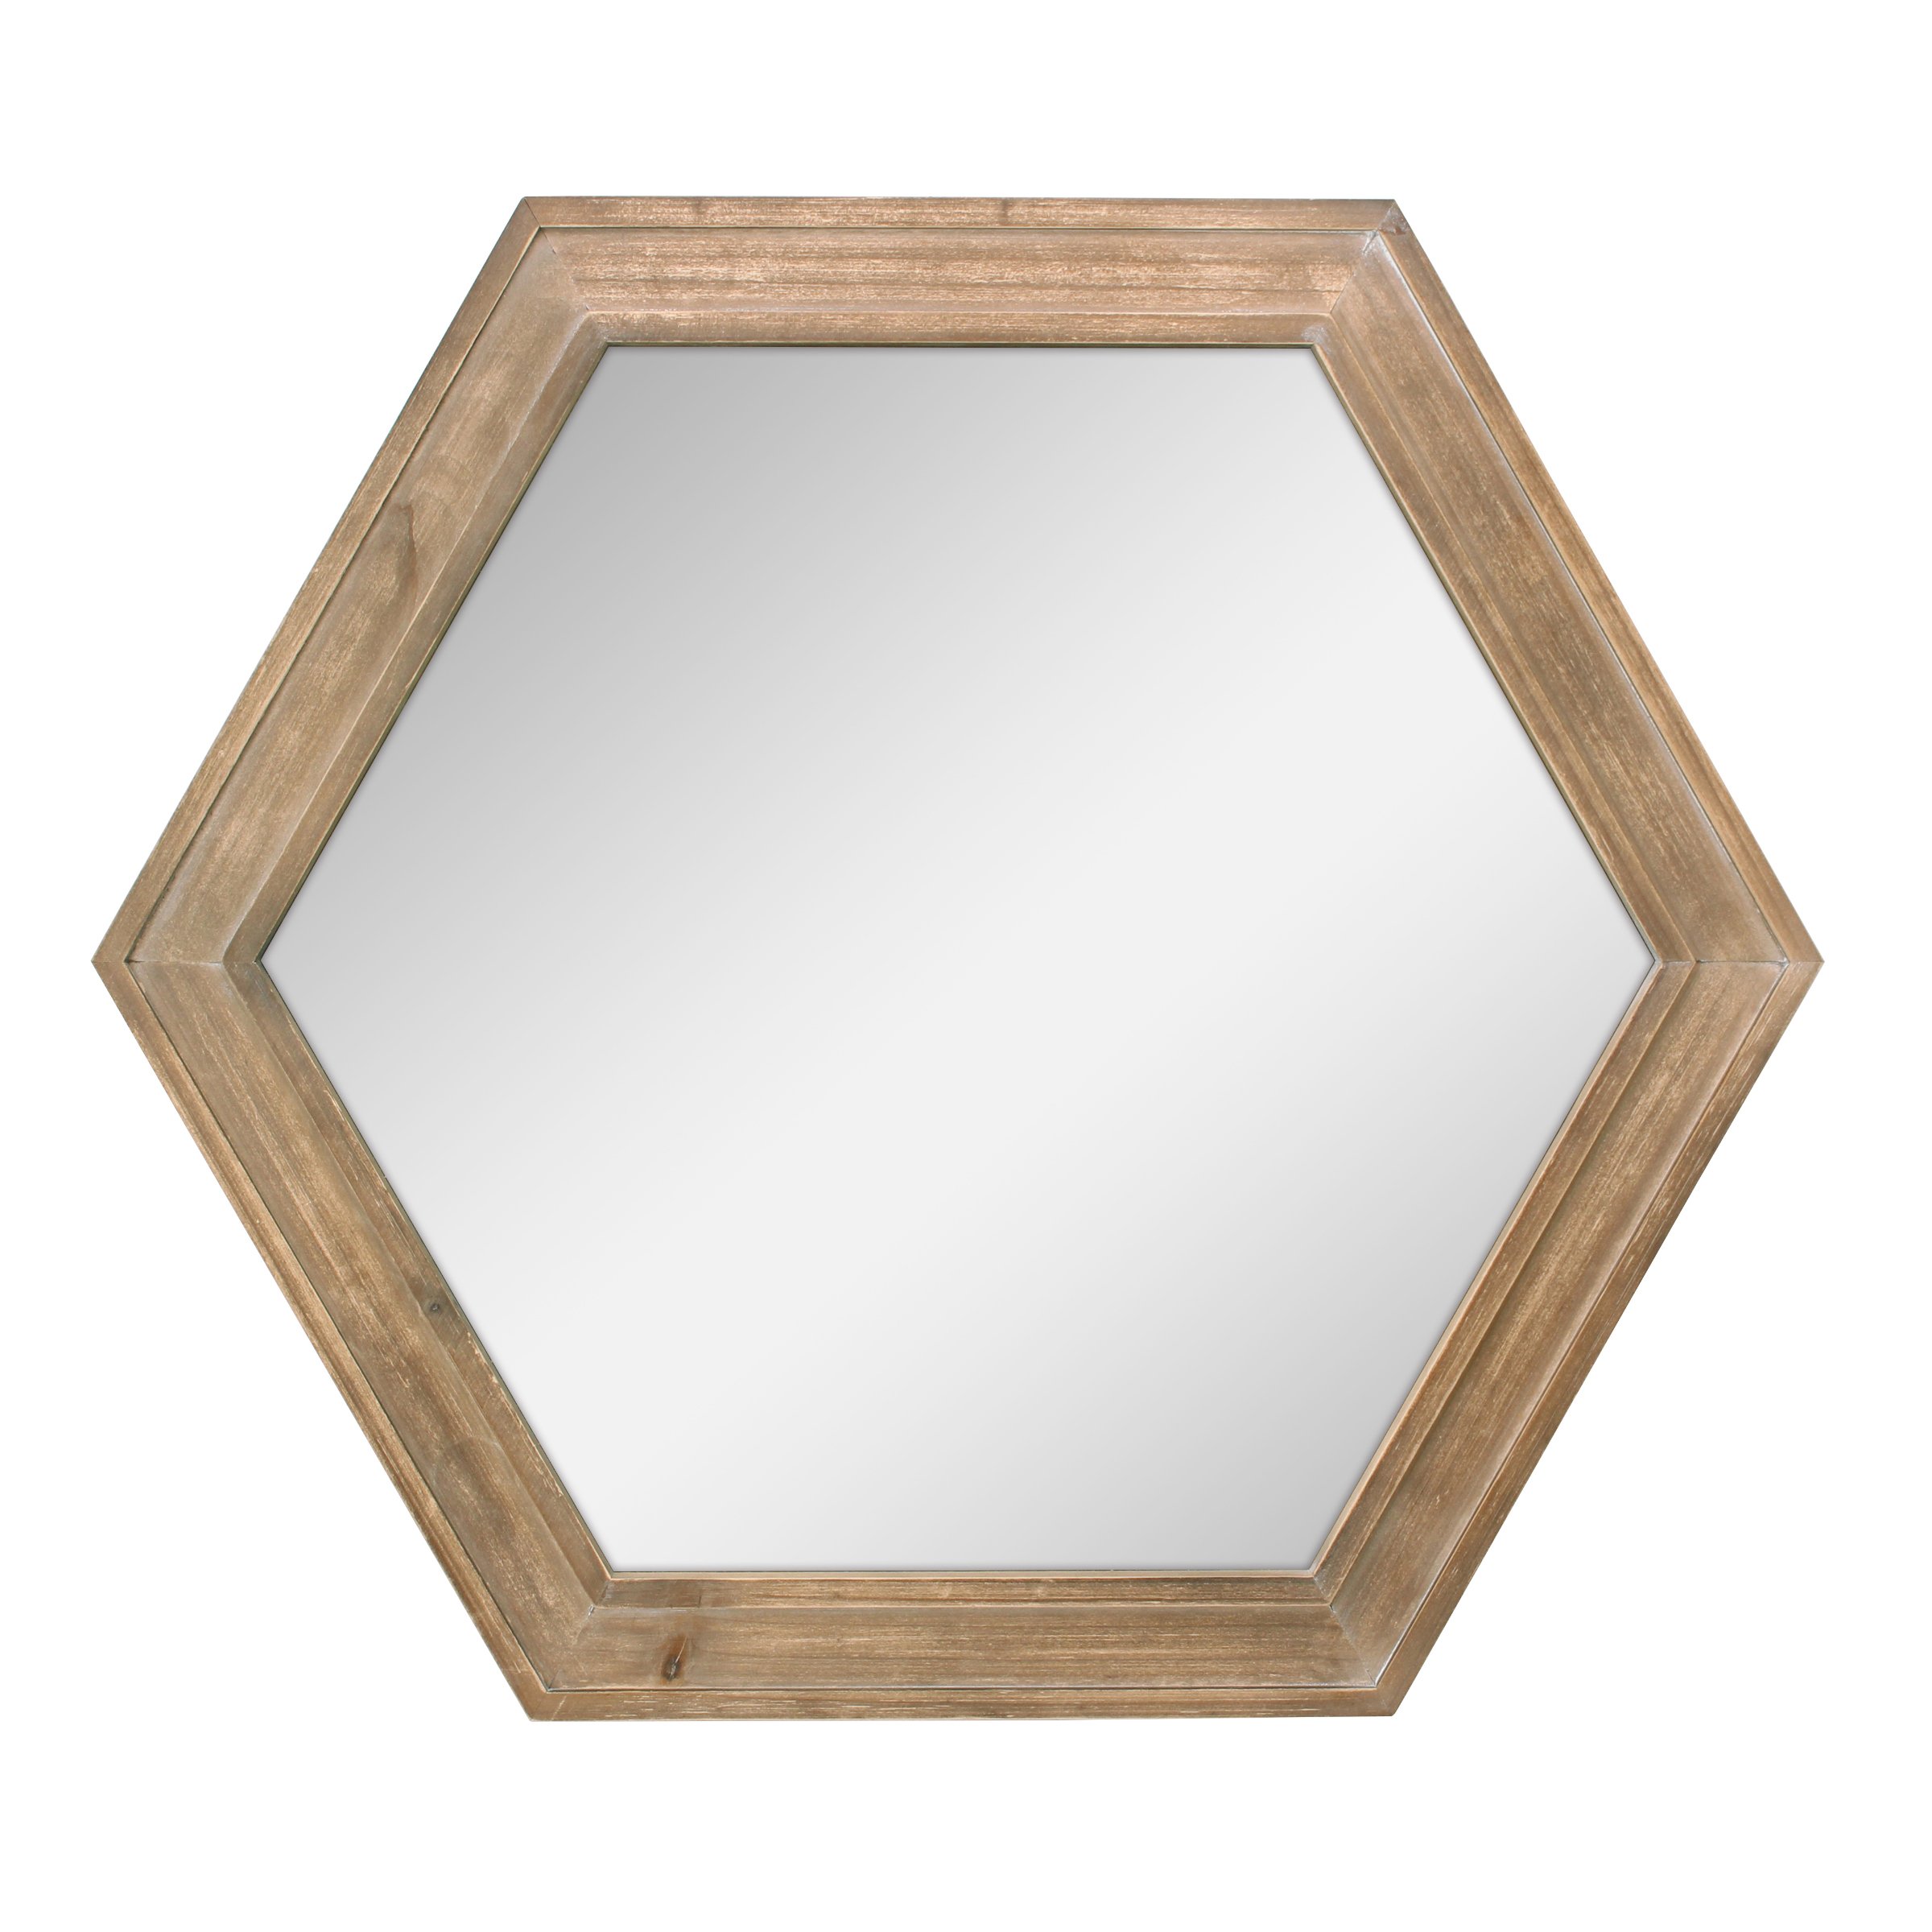 Hexagon Mirror Rindrina Mihantona Rindrina hazo voajanahary Rustic Farmhouse Decor